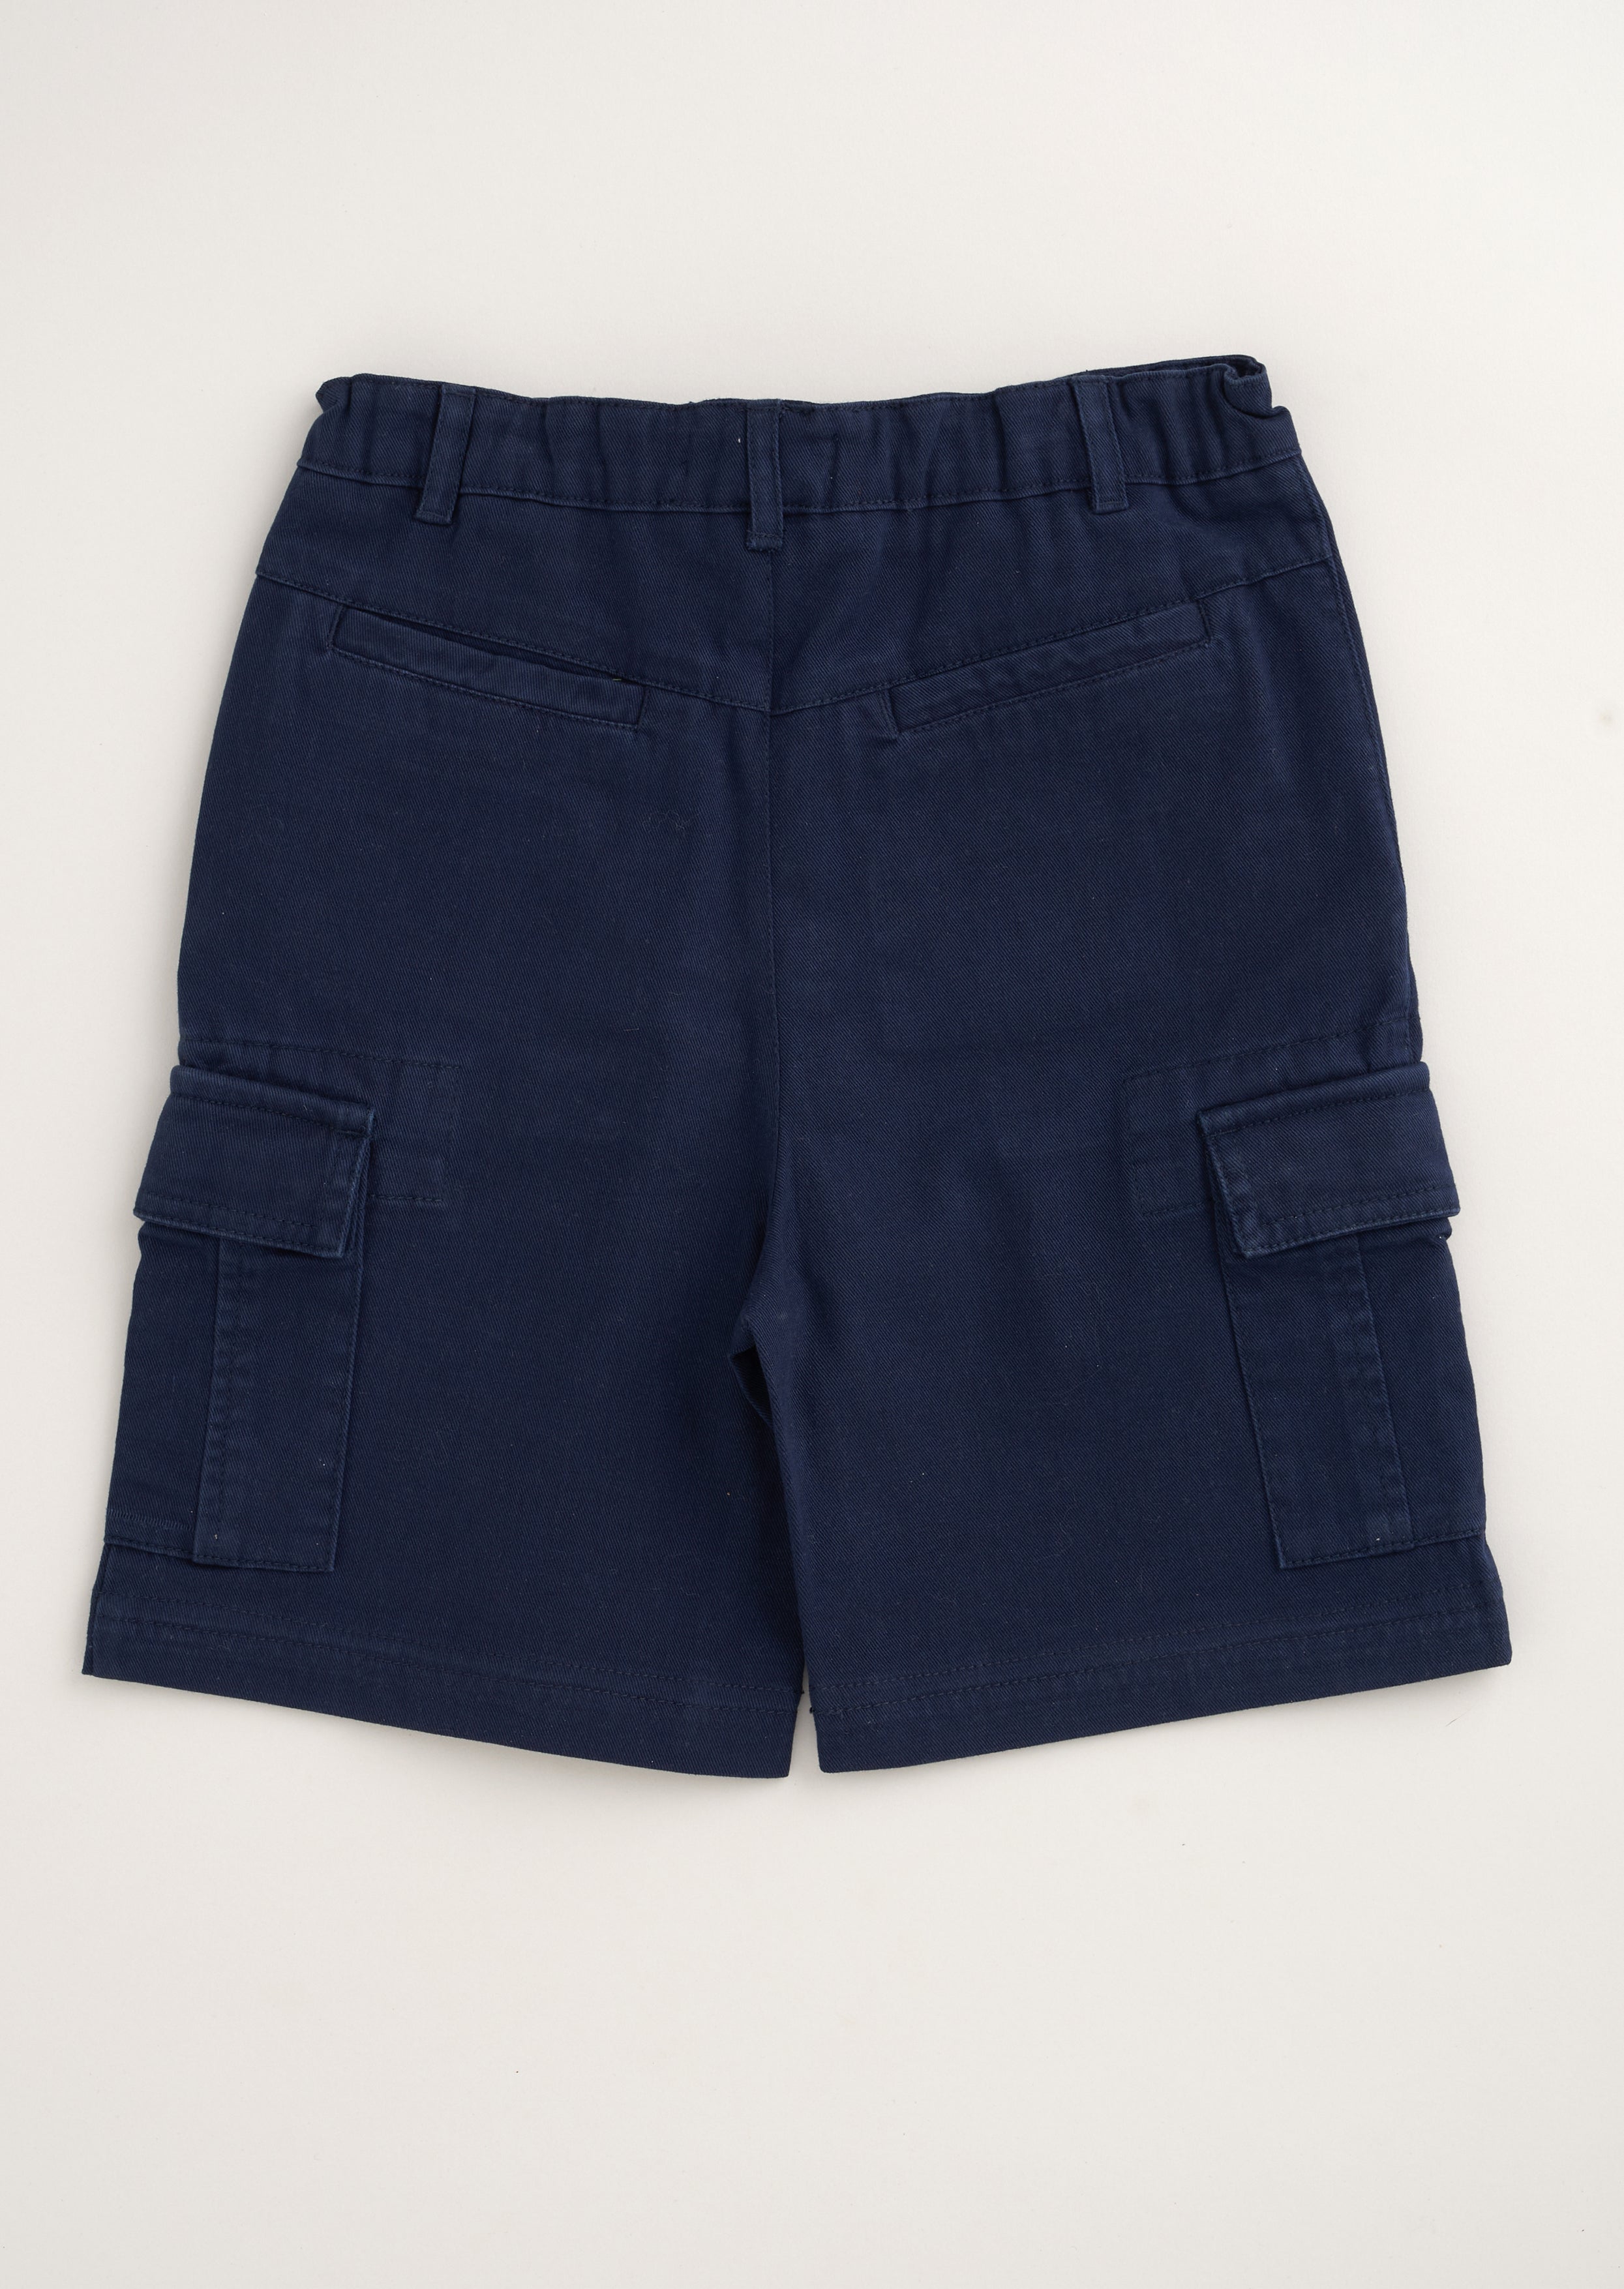 Boys Blue Cargo Woven Shorts